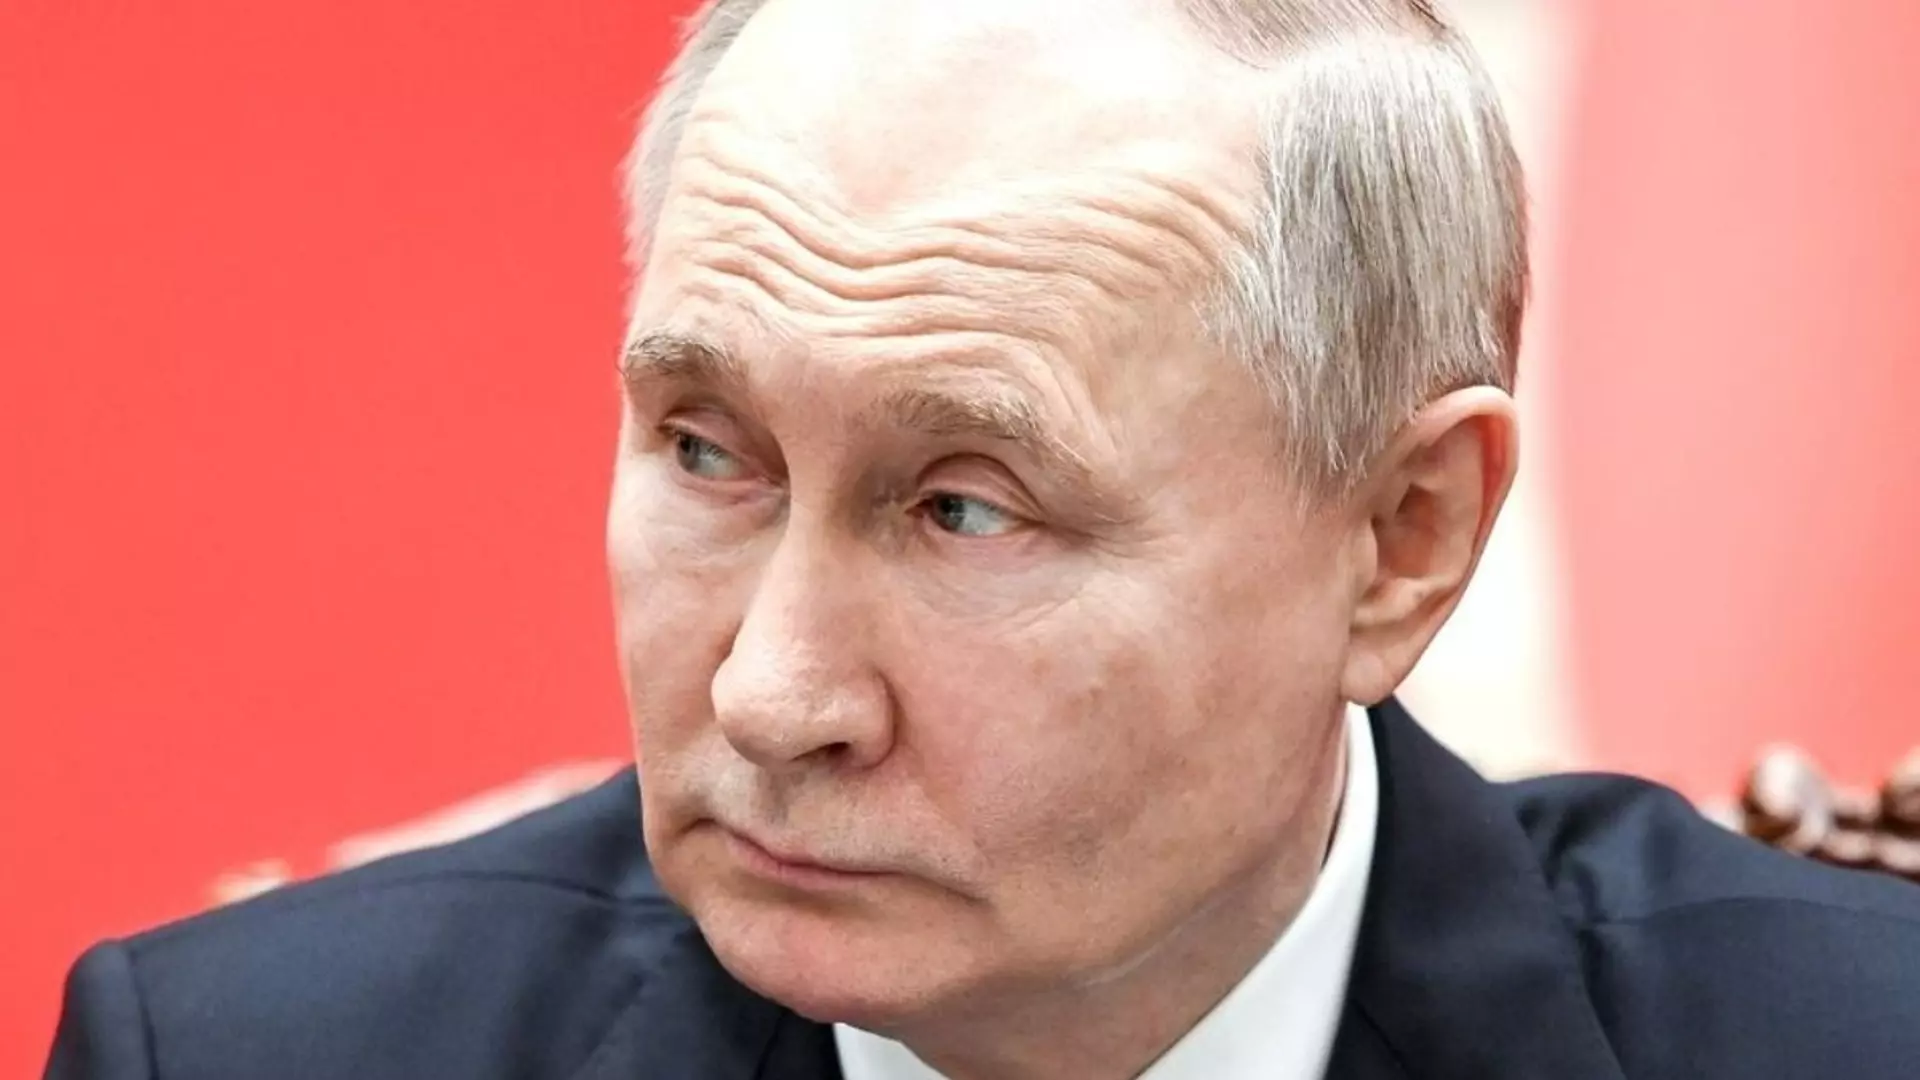 Грандиозен скандал в Русия: Изтекоха секретните документи за резиденцията на Путин в Ново-Огарьово (СНИМКИ)